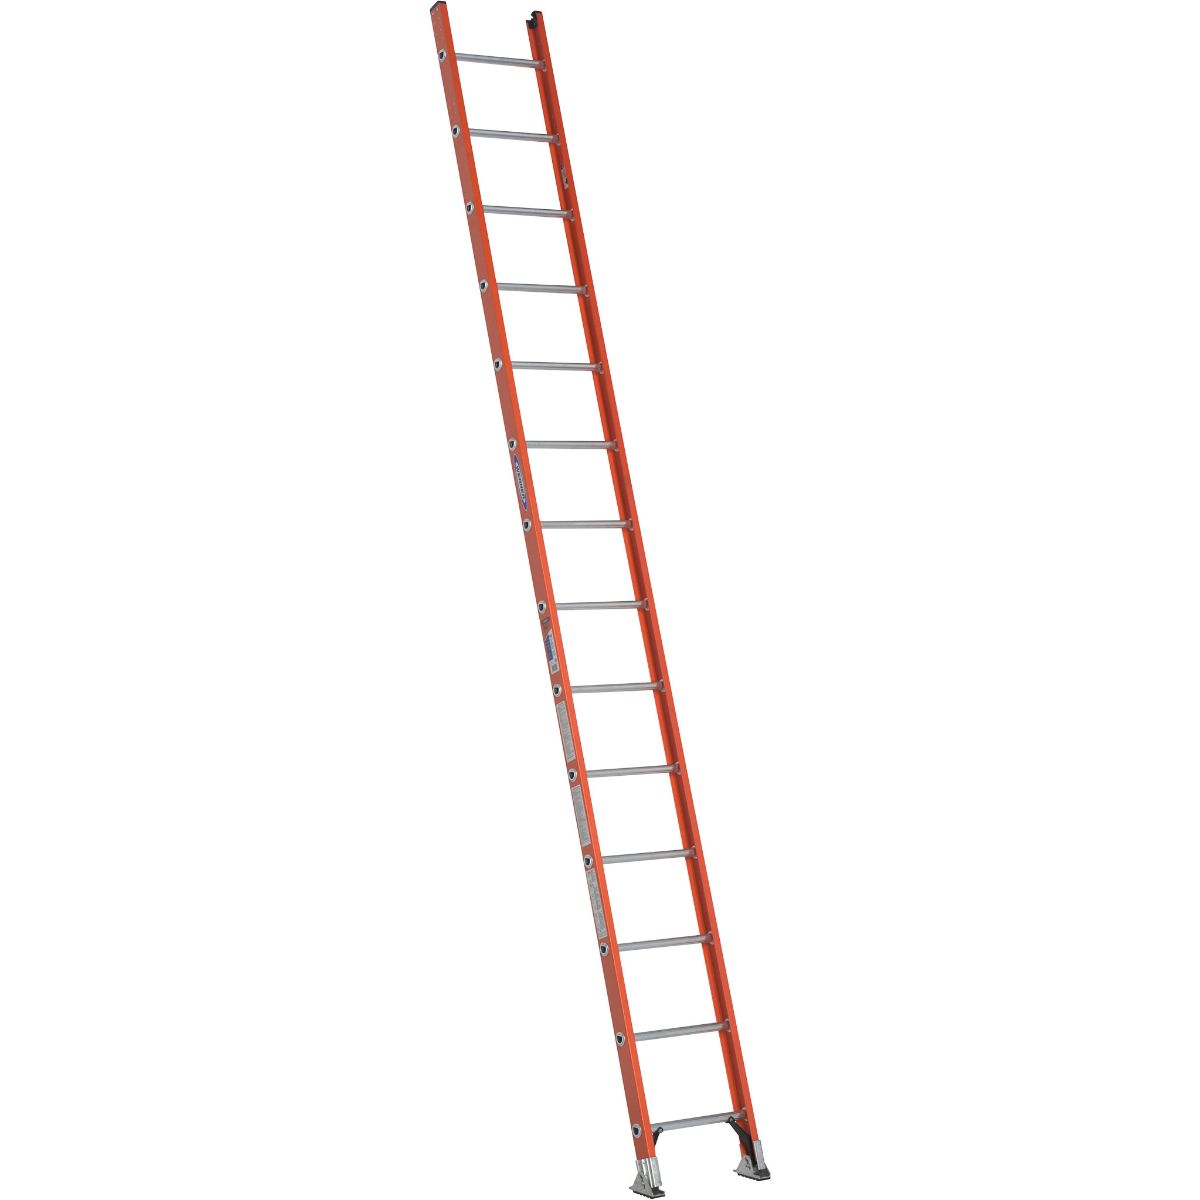 D6214-1 14 Ft. Type Ia Fiberglass D-rung Straight Ladder